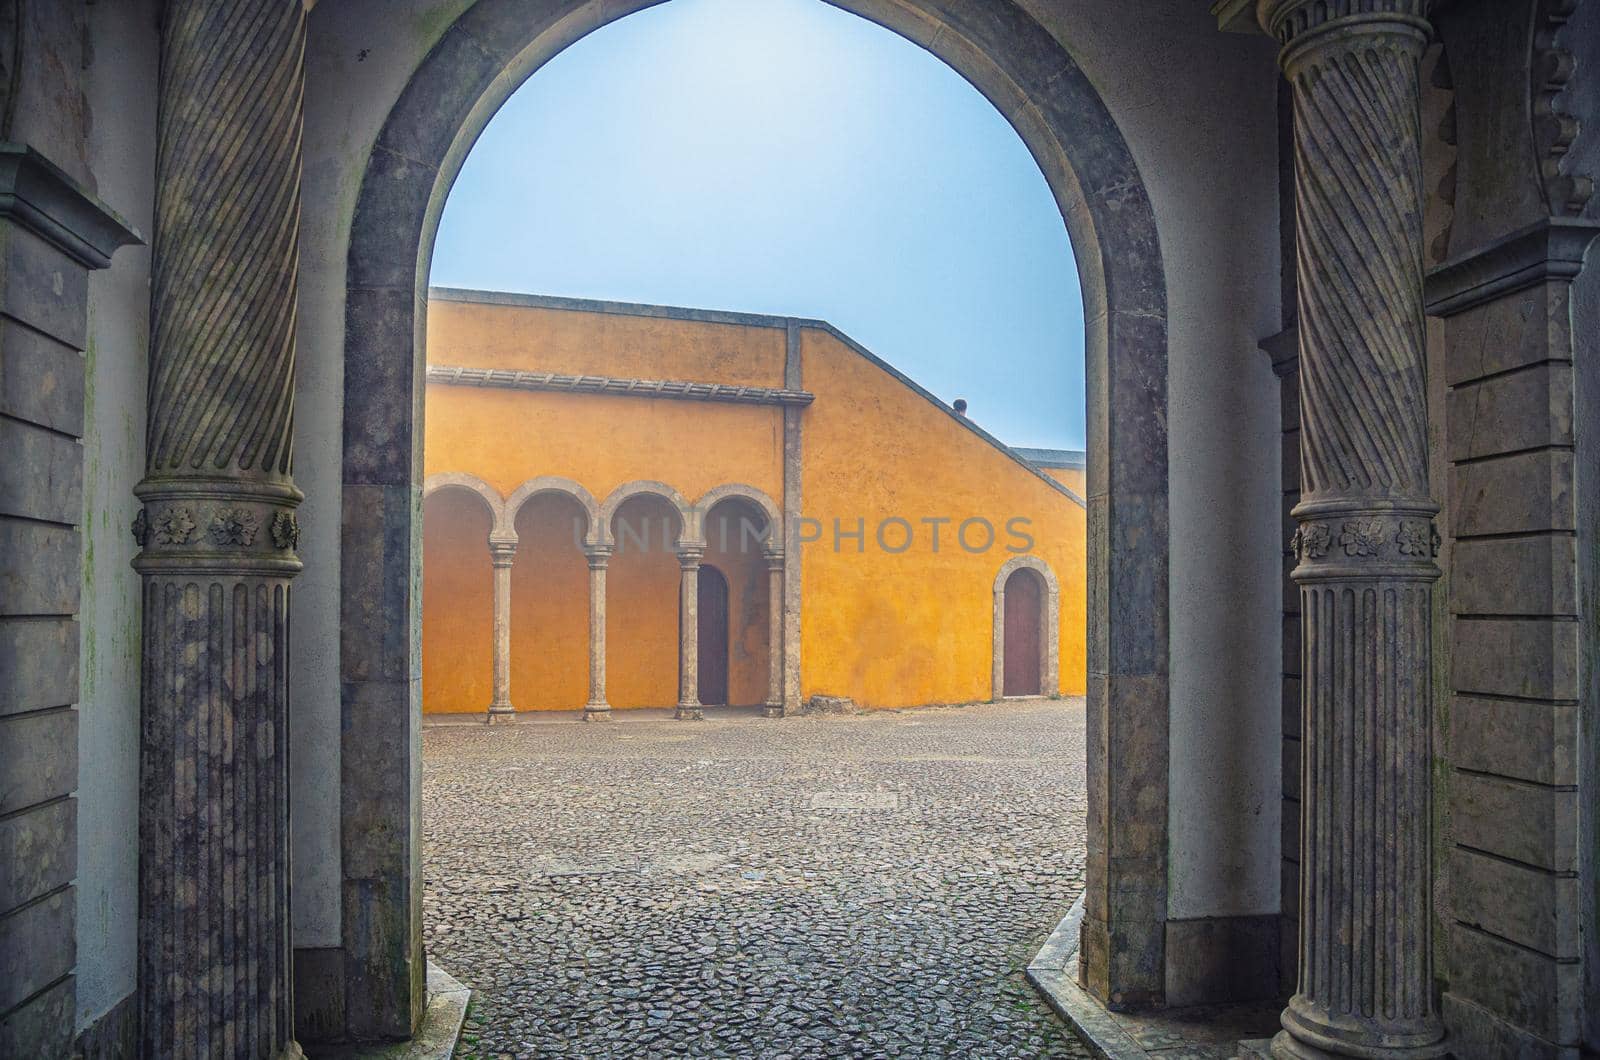 Sintra, Portugal, June 14, 2017: cobblestone courtyard of Pena Palace with arches and columns, Palacio Nacional da Pena Romanticist castle in Sao Pedro de Penaferrim